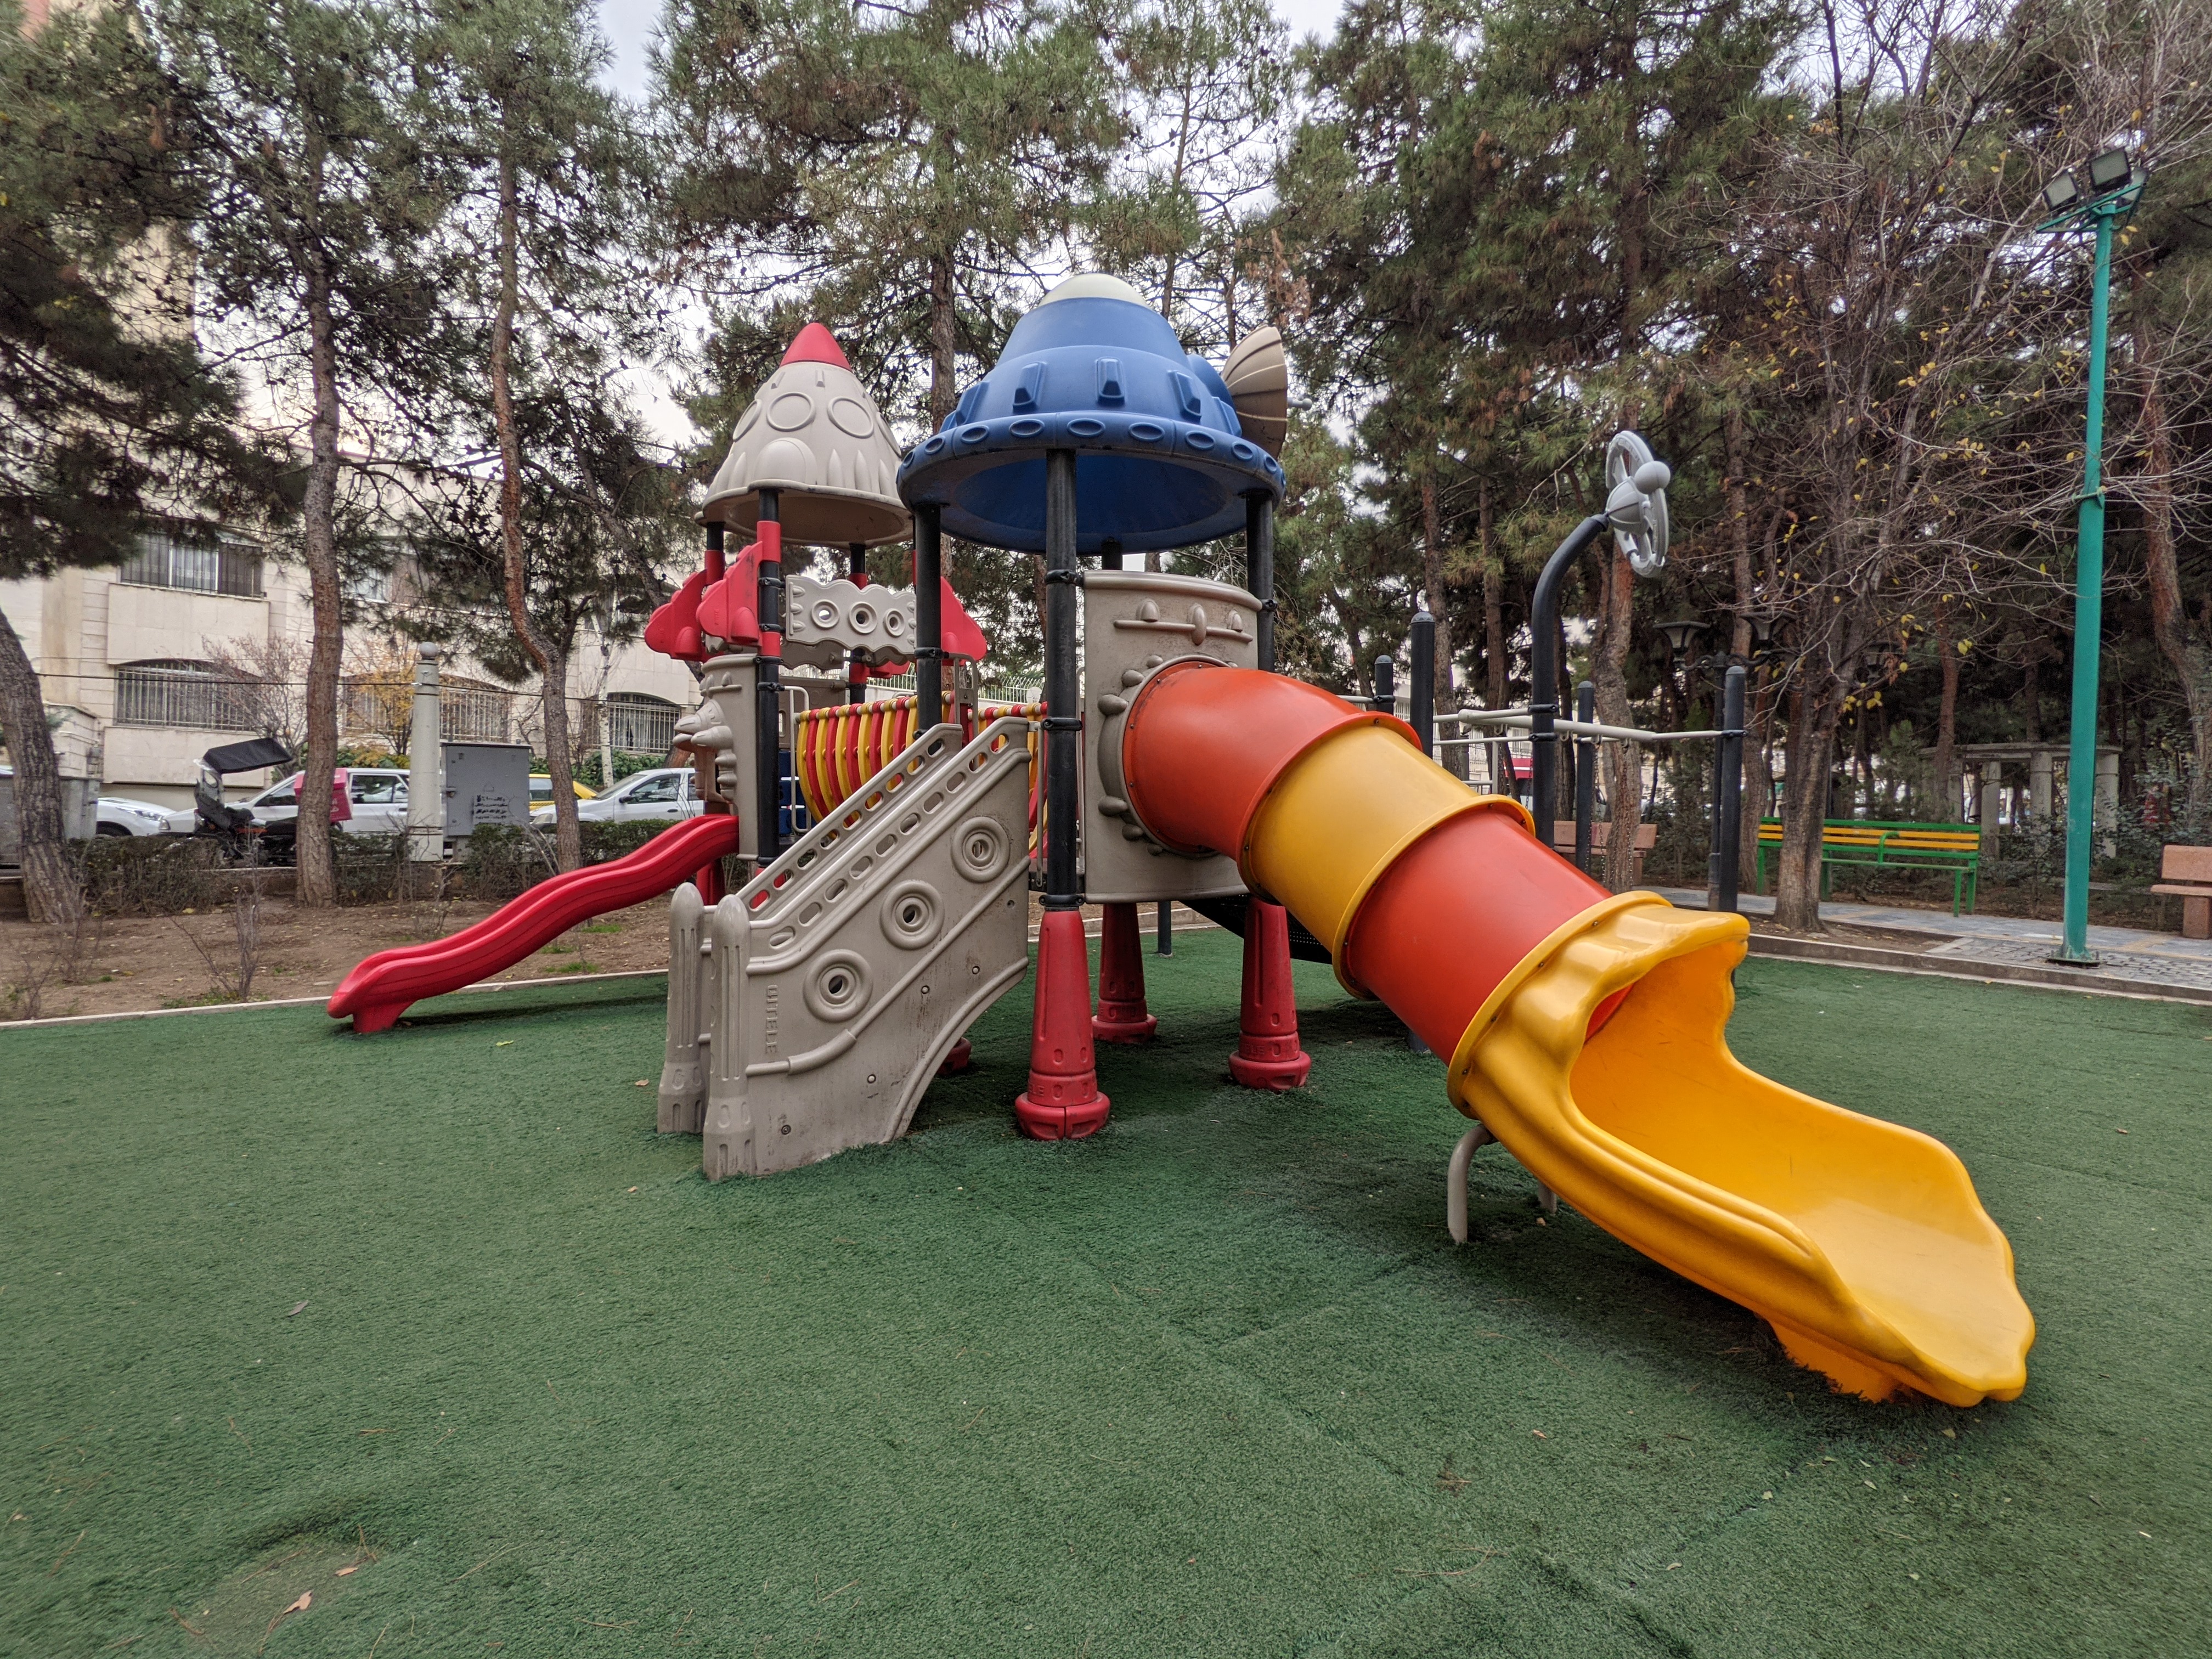 عکس نمونه دوربین اولتراواید پیکسل ۵ در طول روز - زمین بازی کودک در پارک صبا